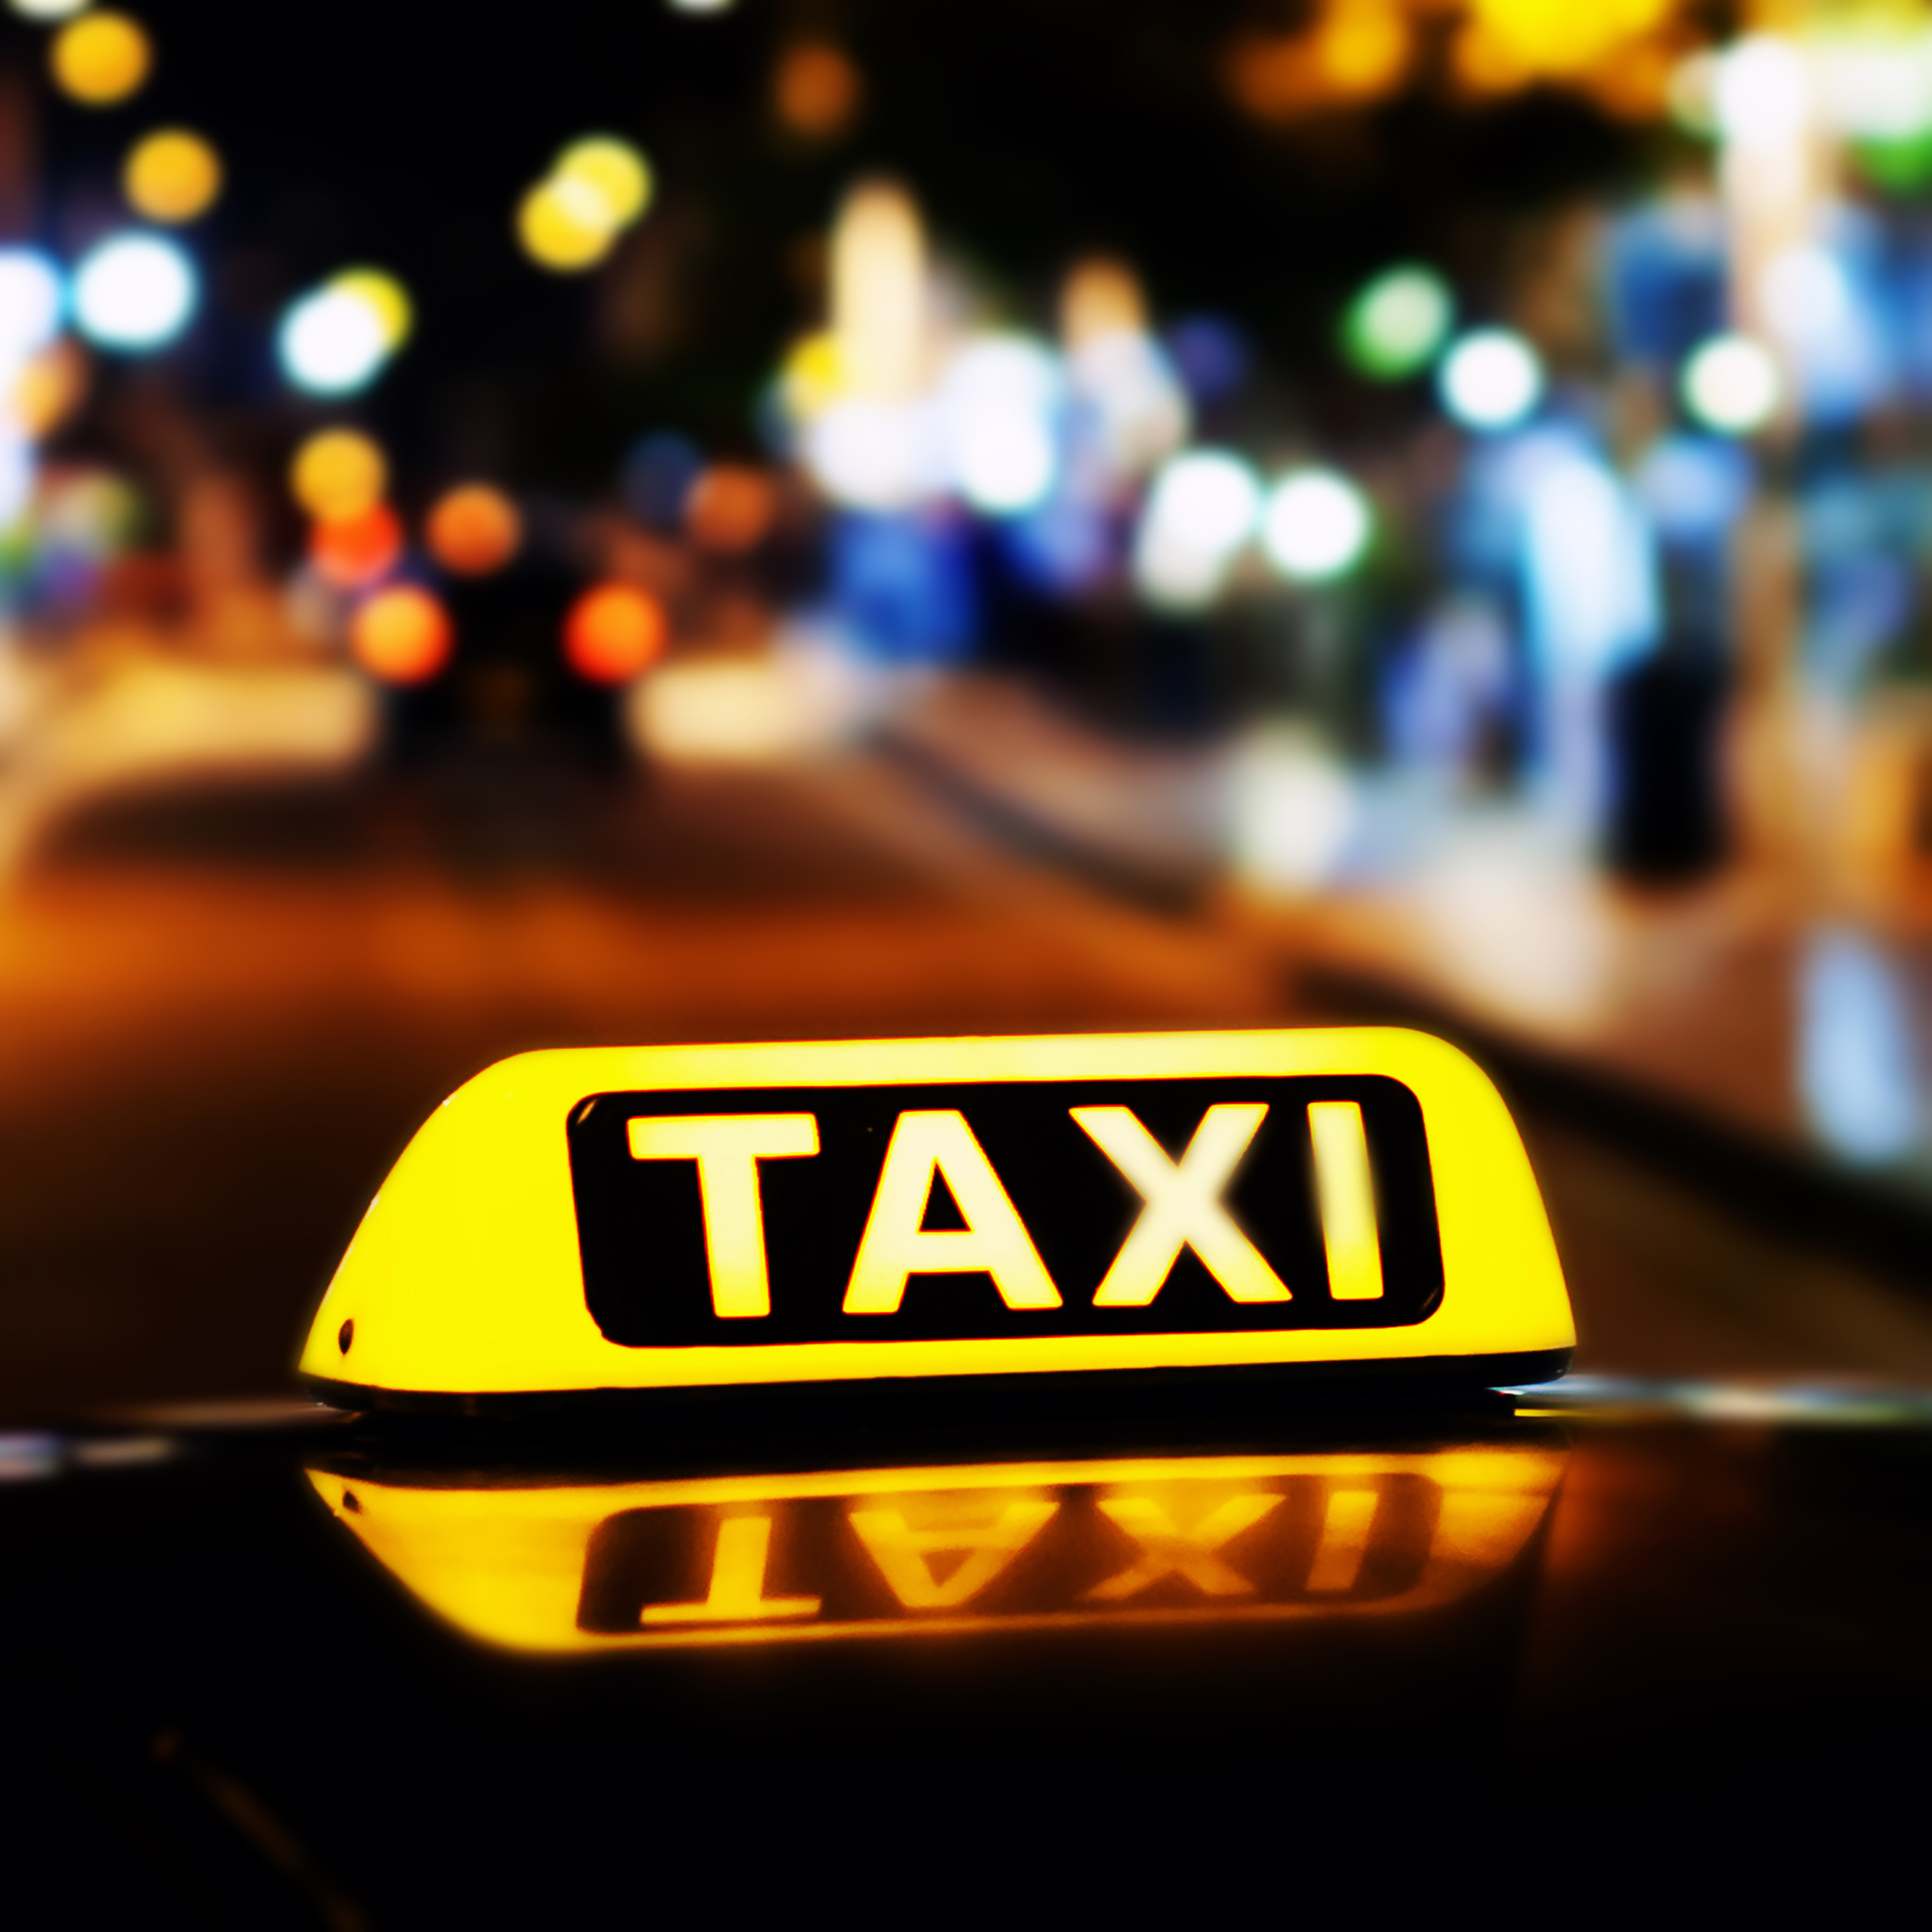 Leuchtendes gelbes Taxi-Schild auf einem Fahrzeug vor nächtlichem unscharfen Hintergrund.